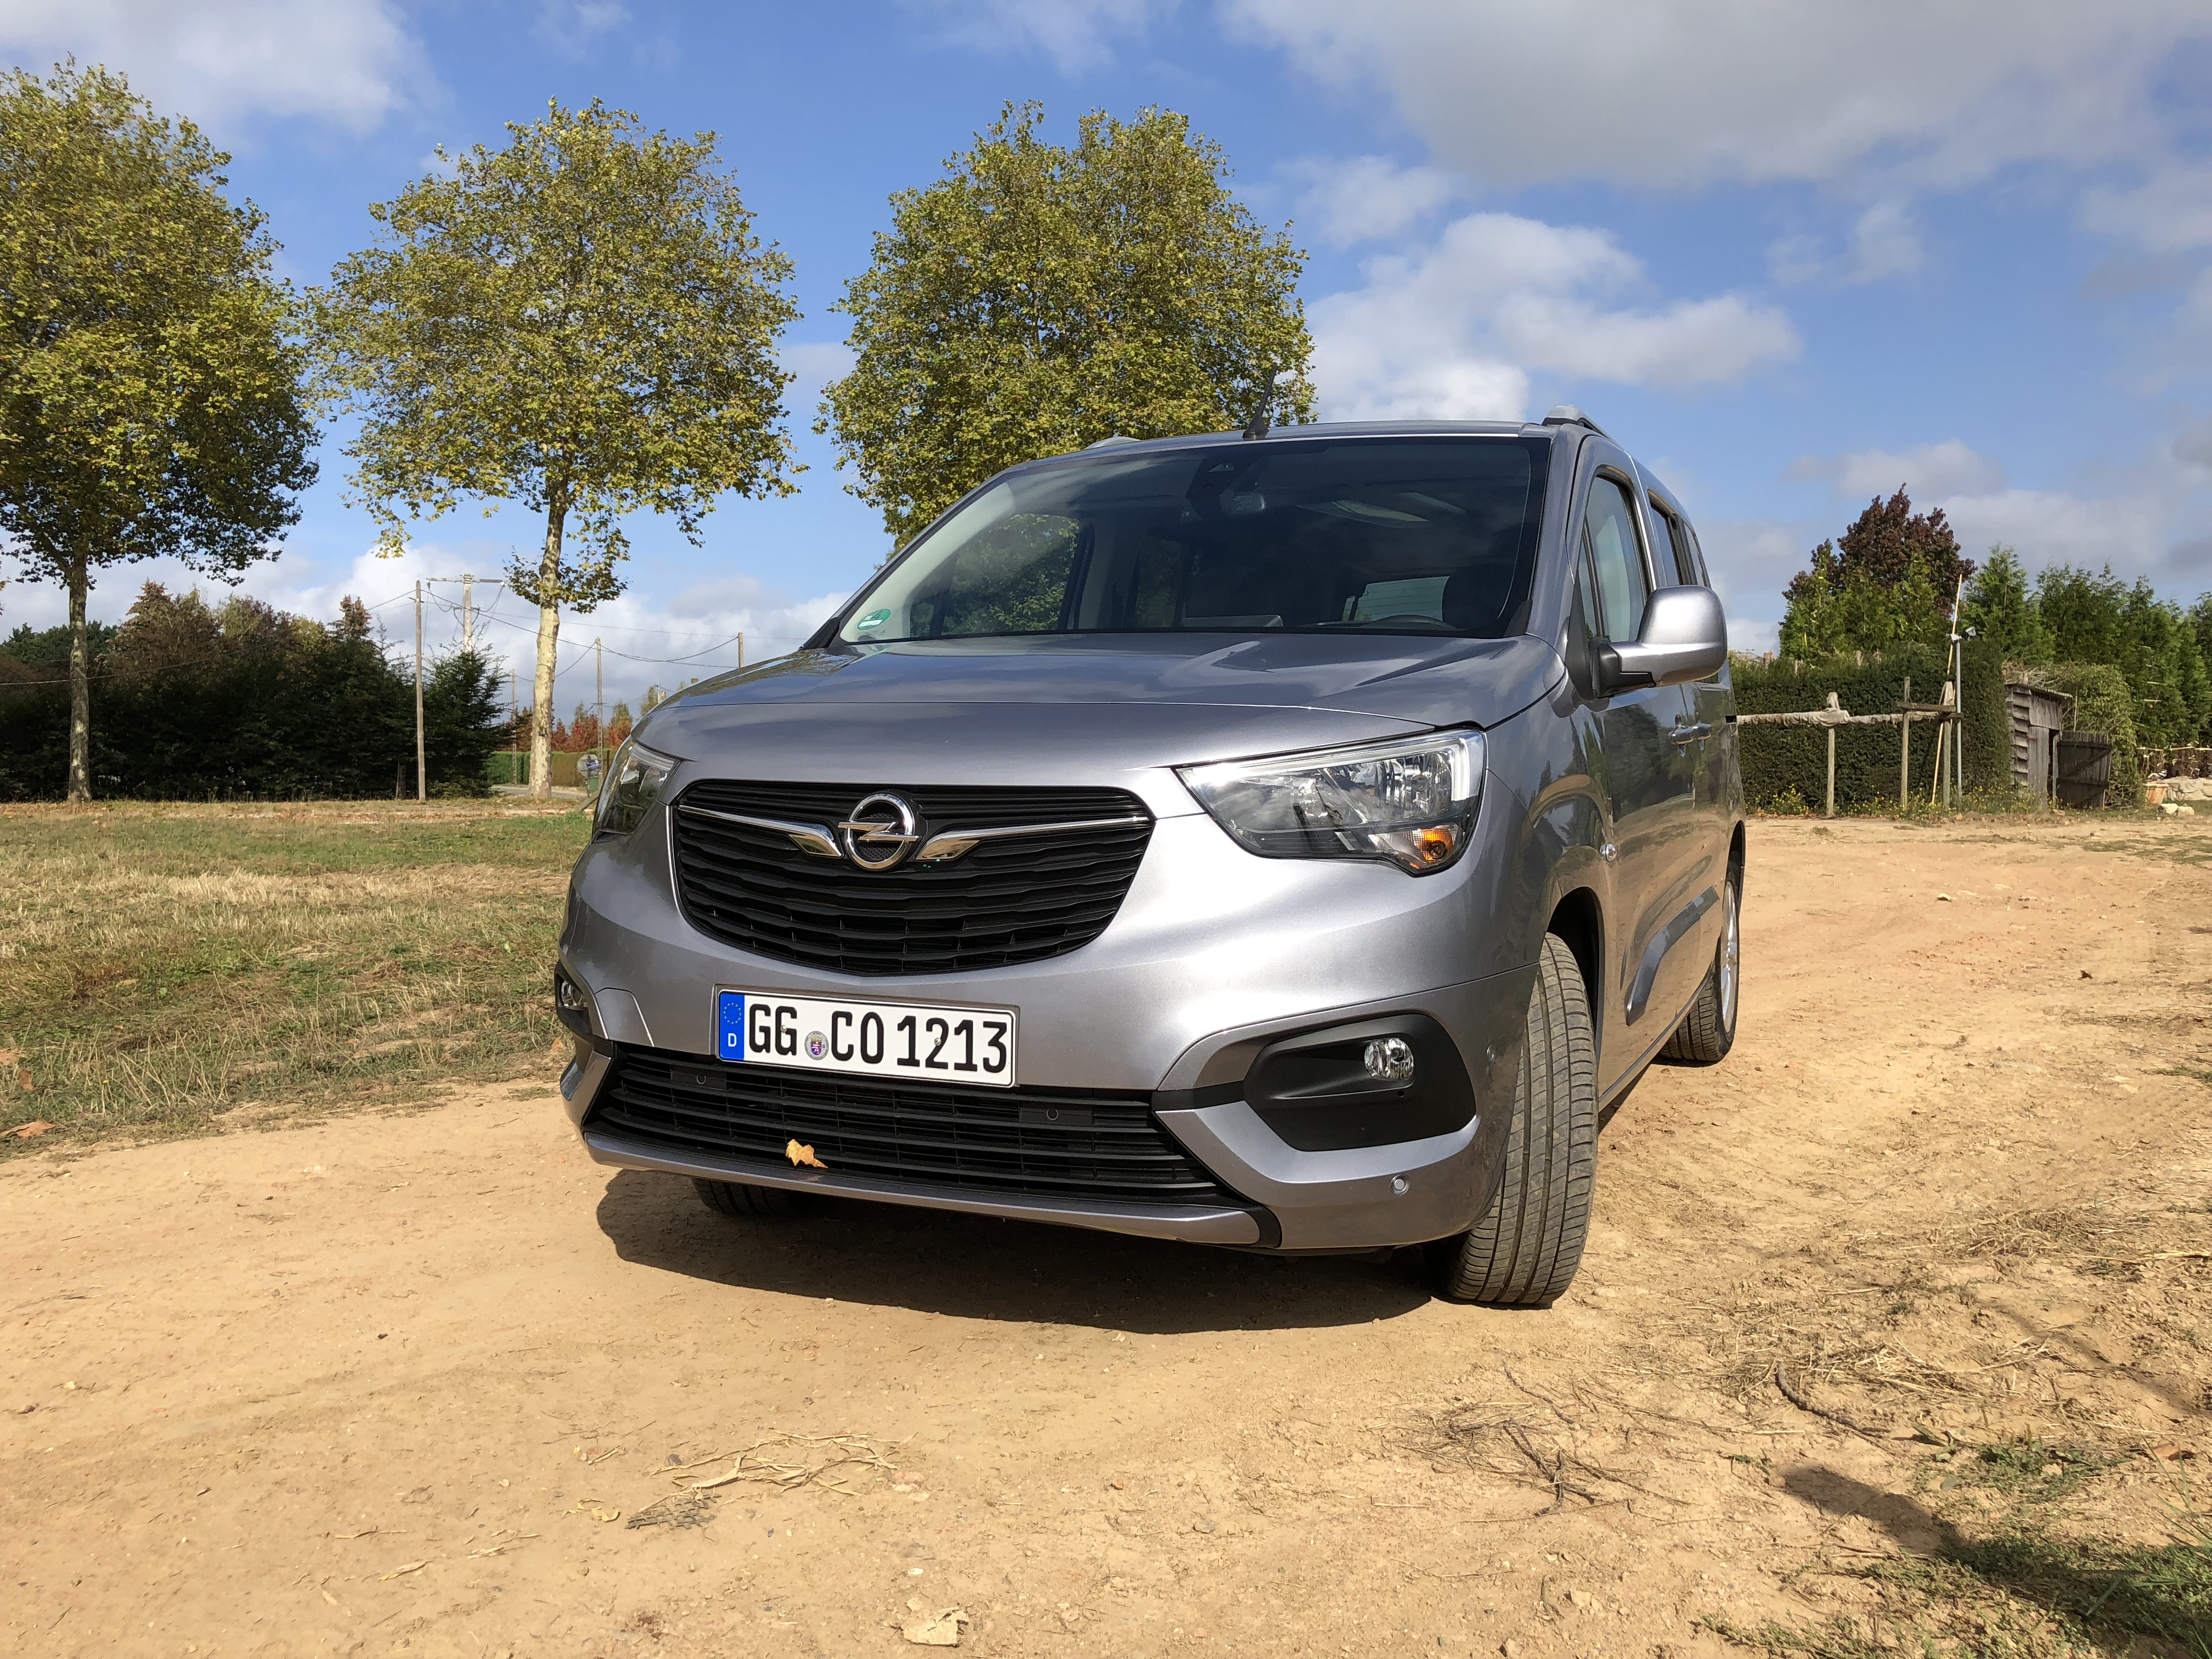 Opel Combo Life reviews model